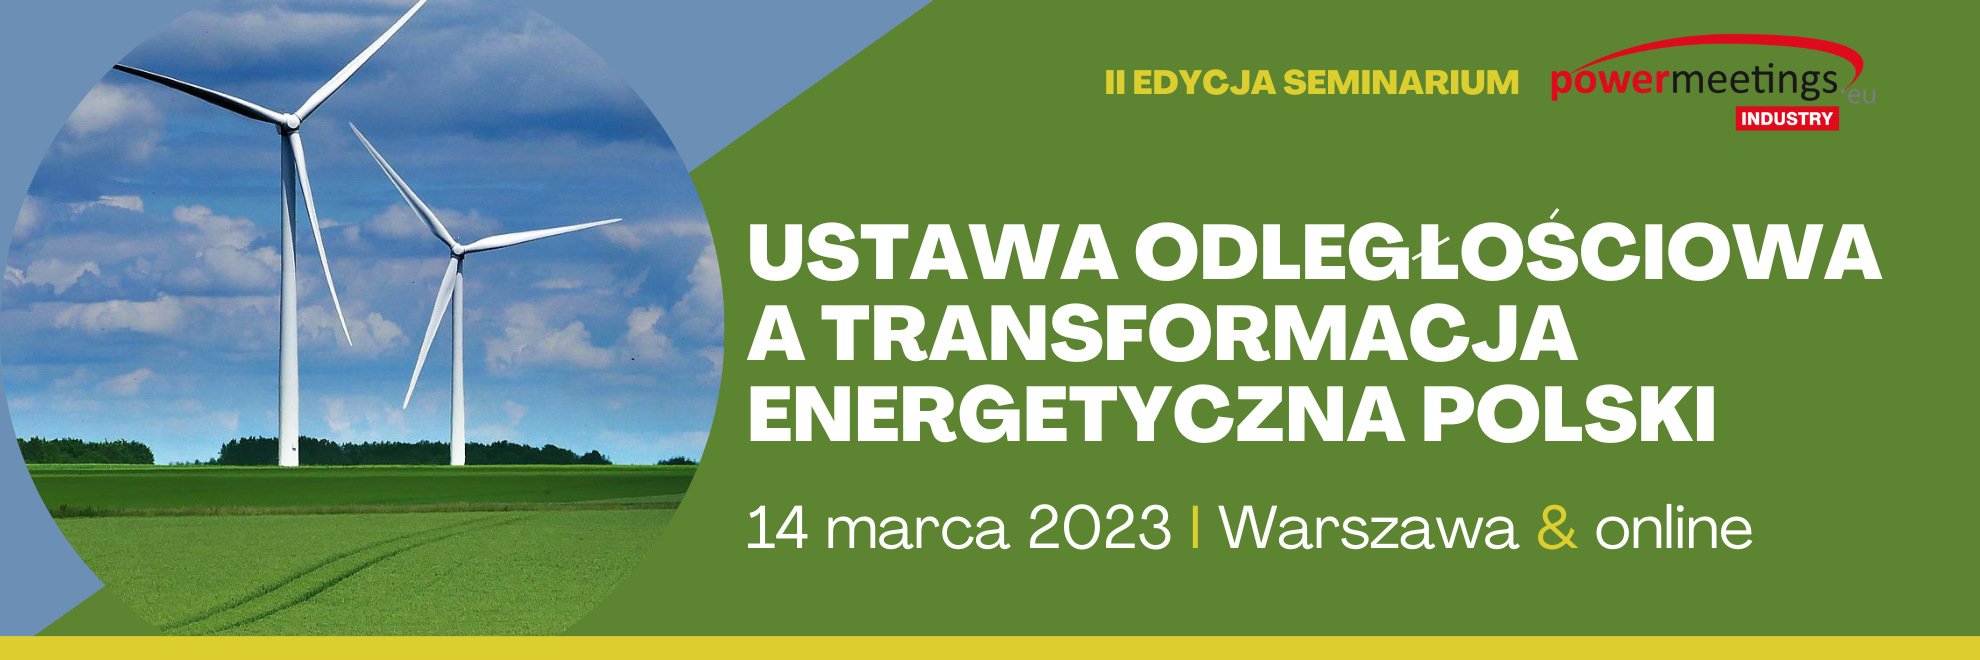 Ustawa odległościowa, a transformacja energetyczna Polski 2023